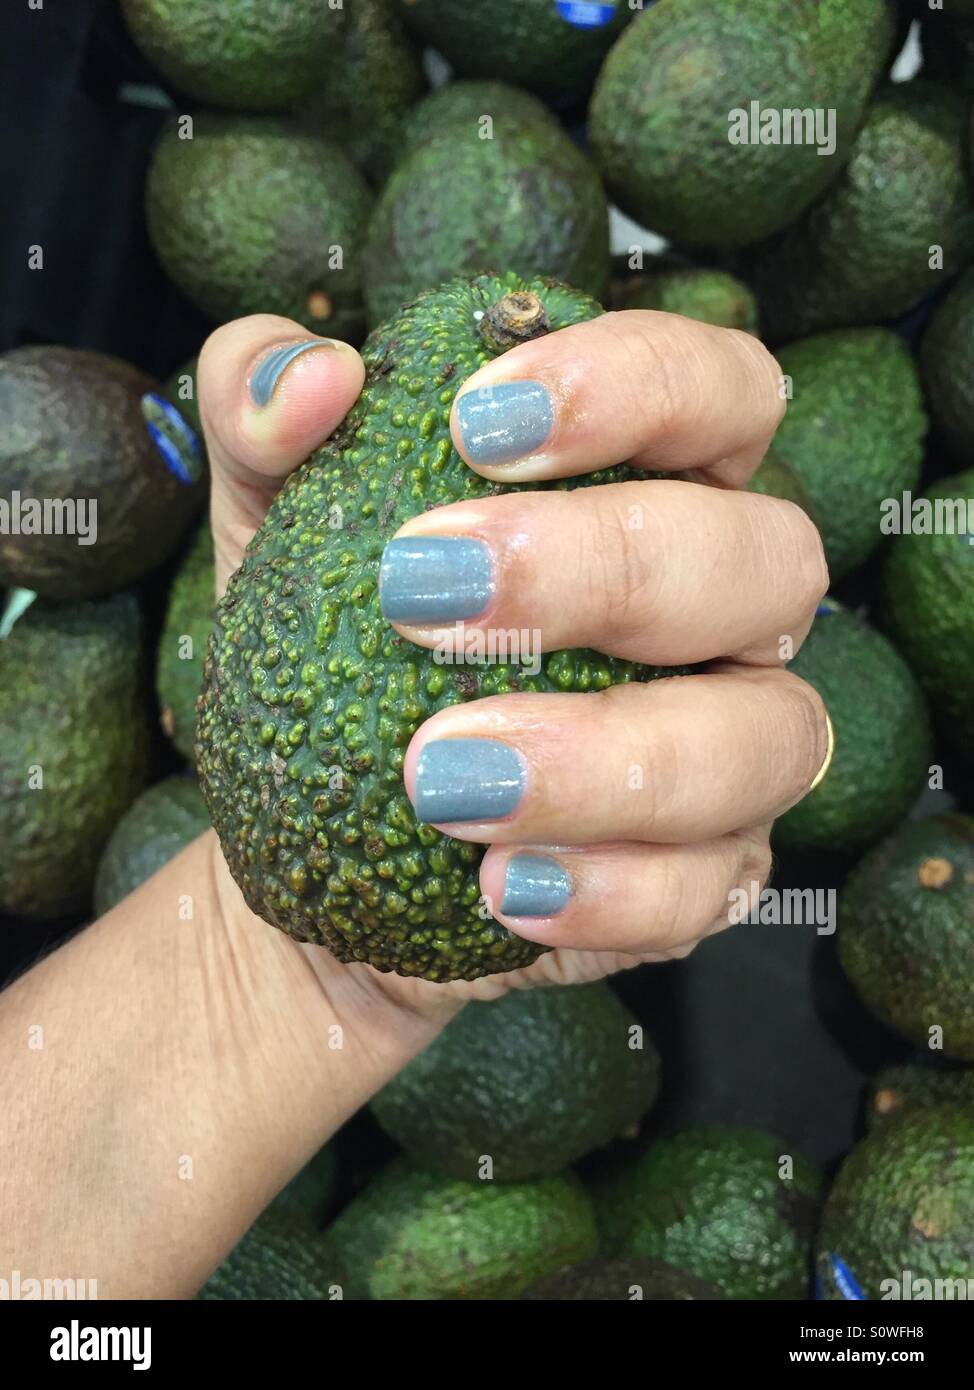 Hand holding avocado Stock Photo